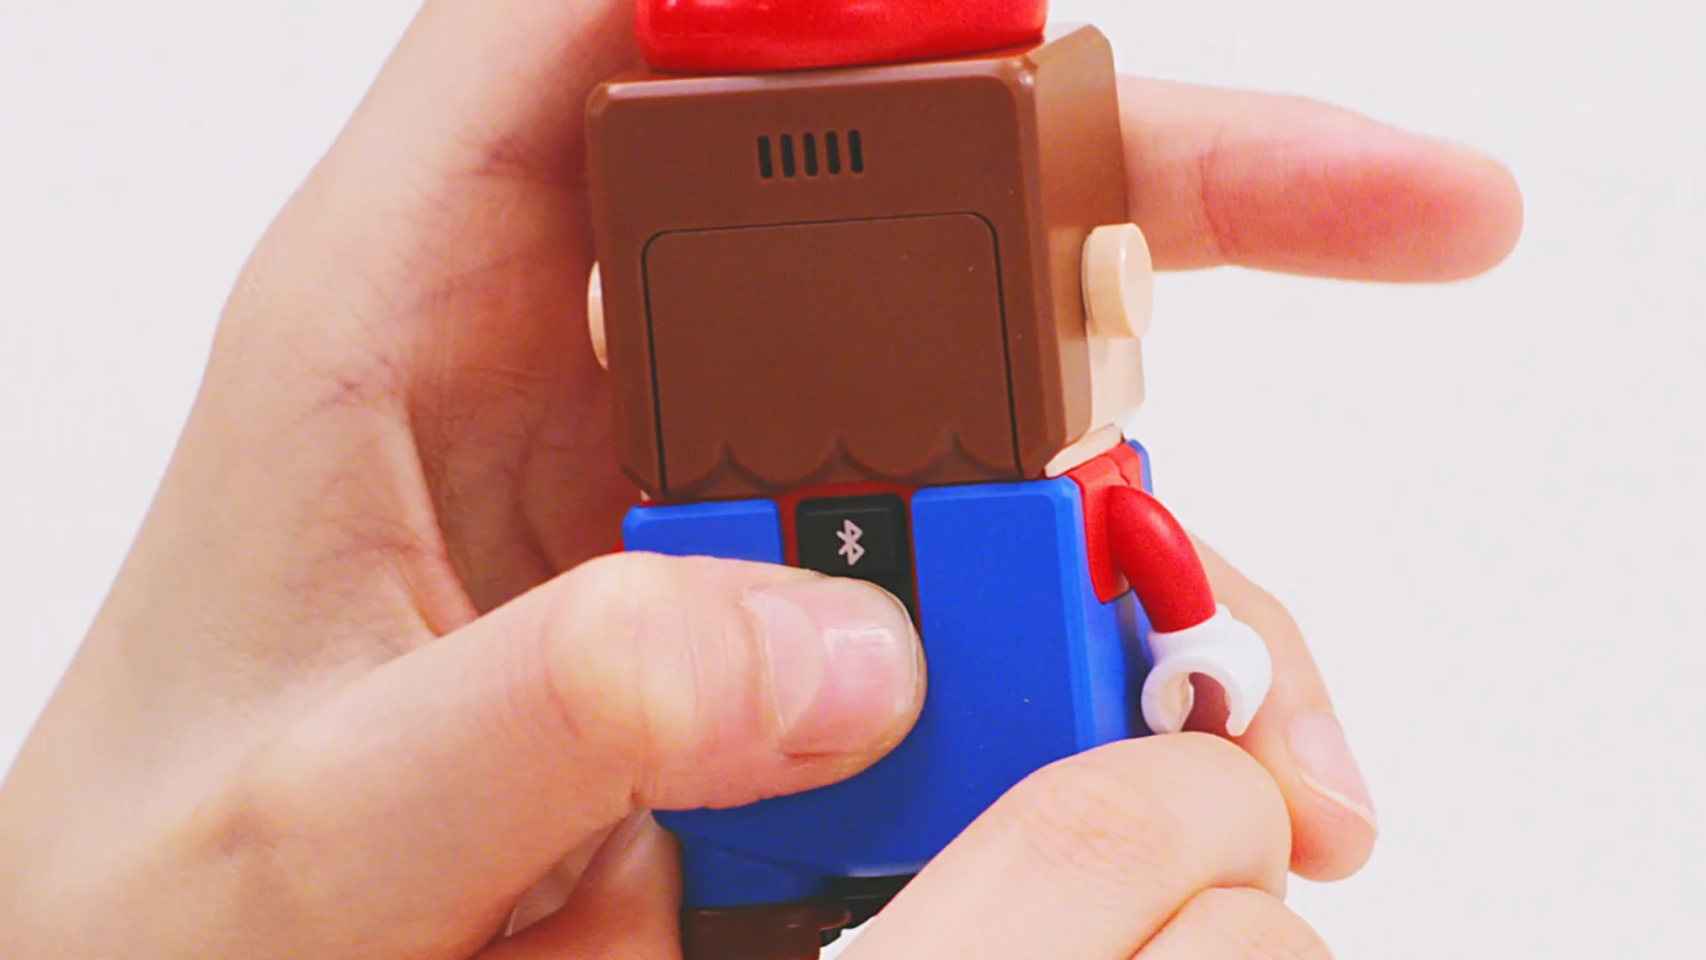 La figura de Mario tiene un botón de encendido, además de uno de Bluetooth